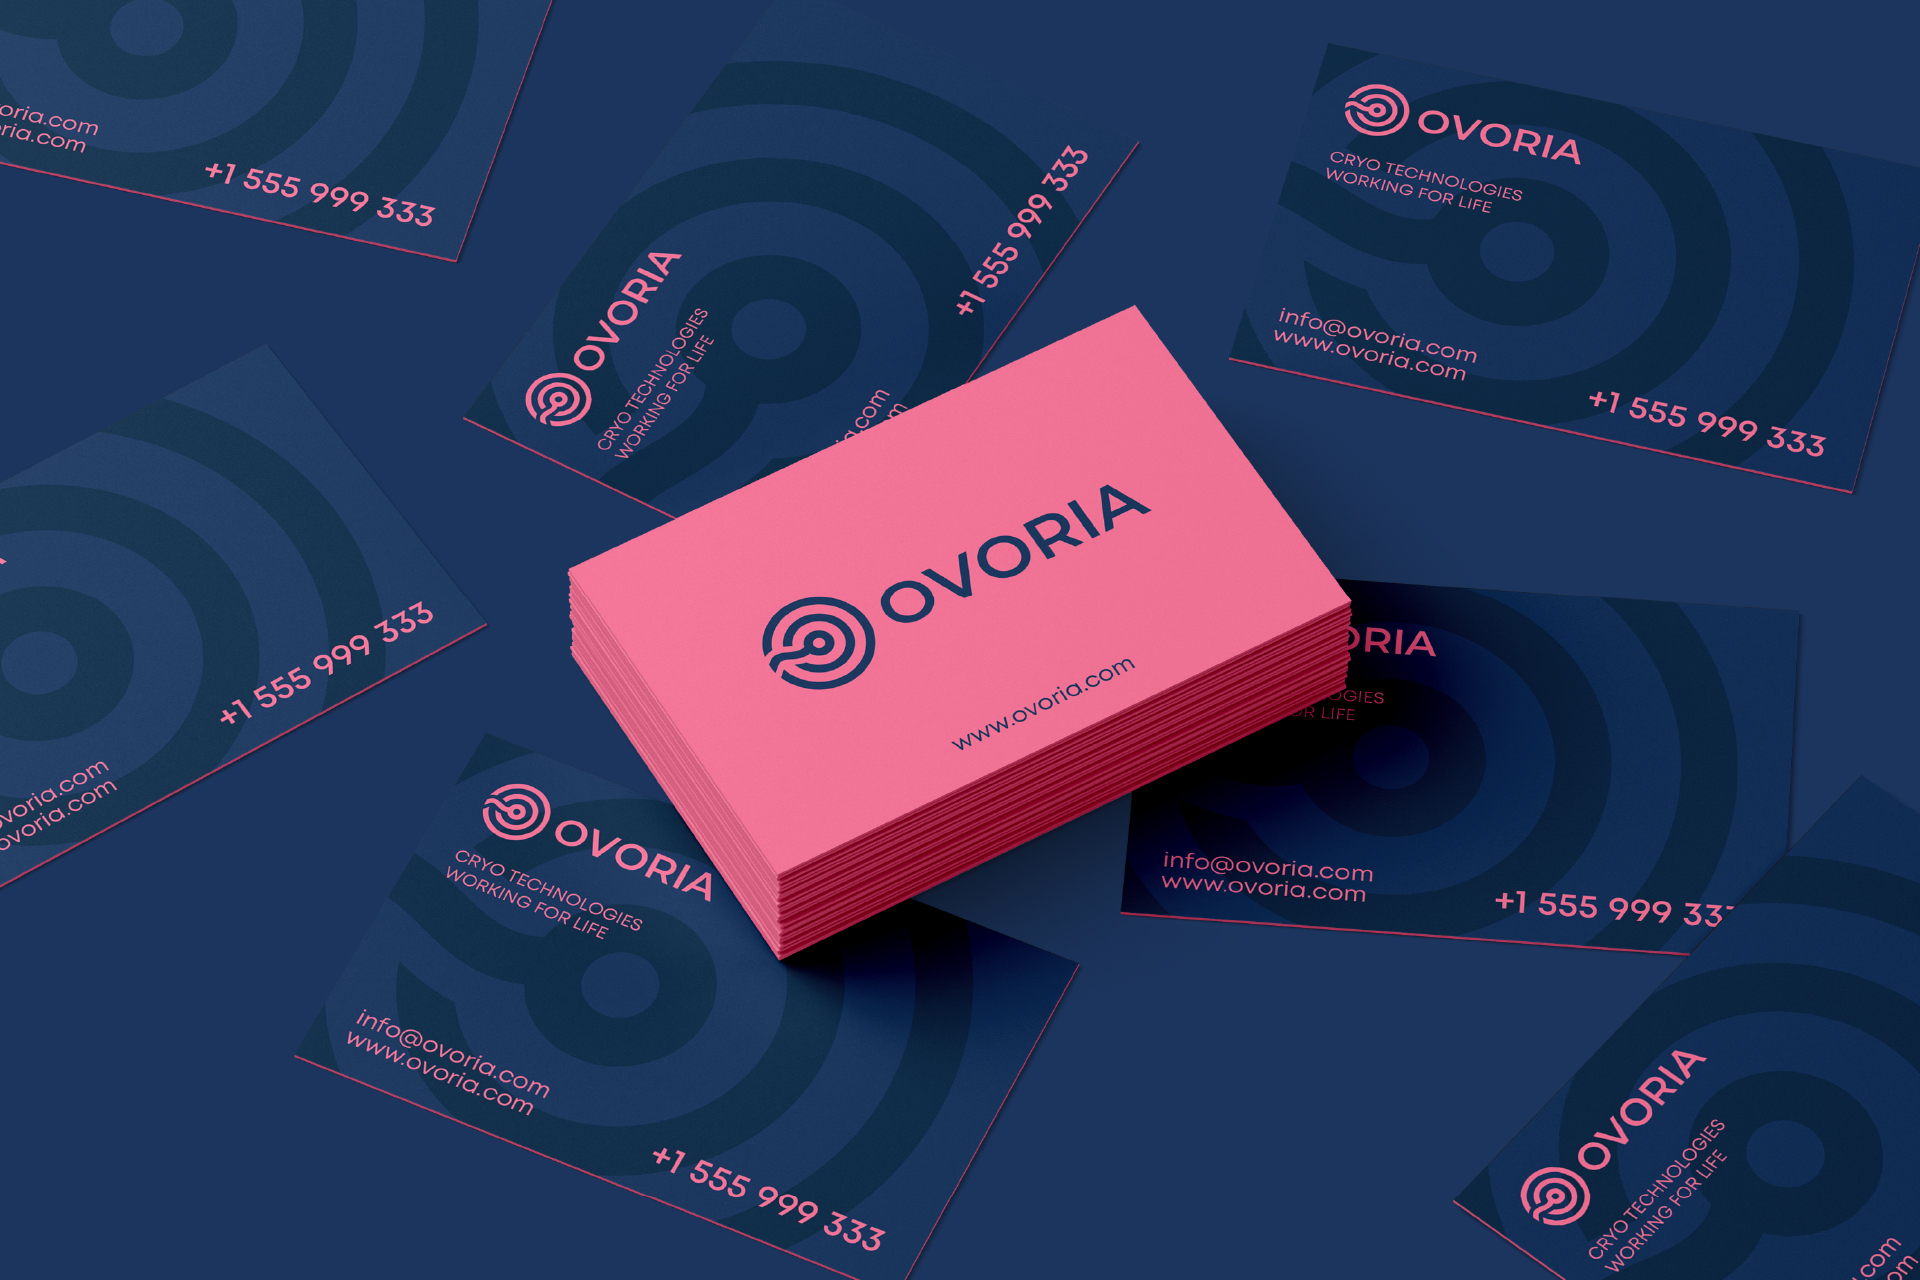 Создание айдентики для международной медицинской компании Ovoria.04 | BrandME